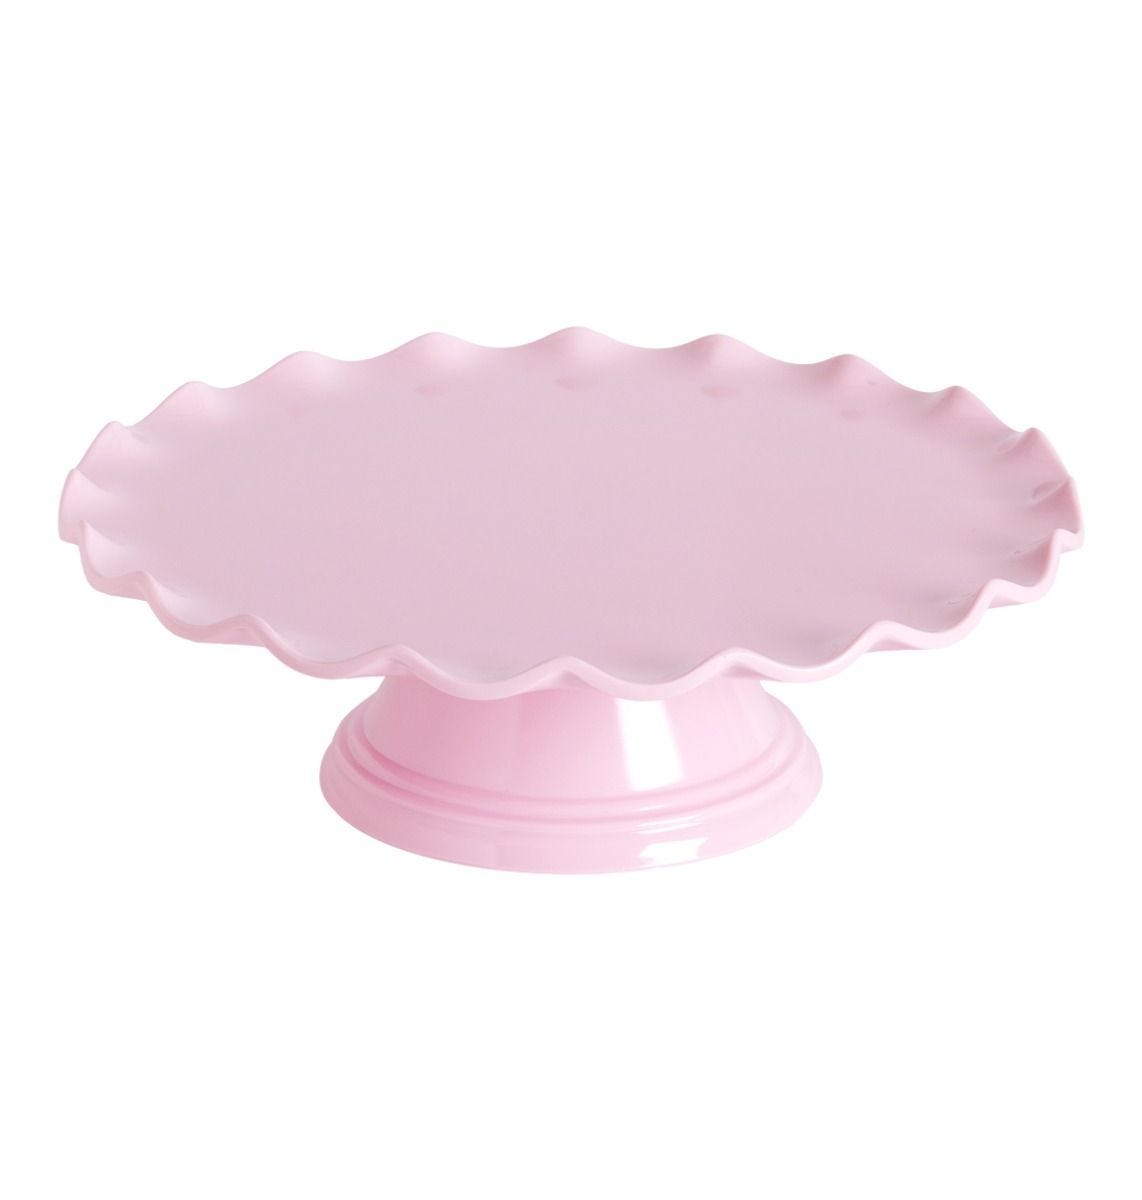 Stojan na tortu štandart vlnkový ružový, O 27,5 x 9 cm, LLC09, ALLC